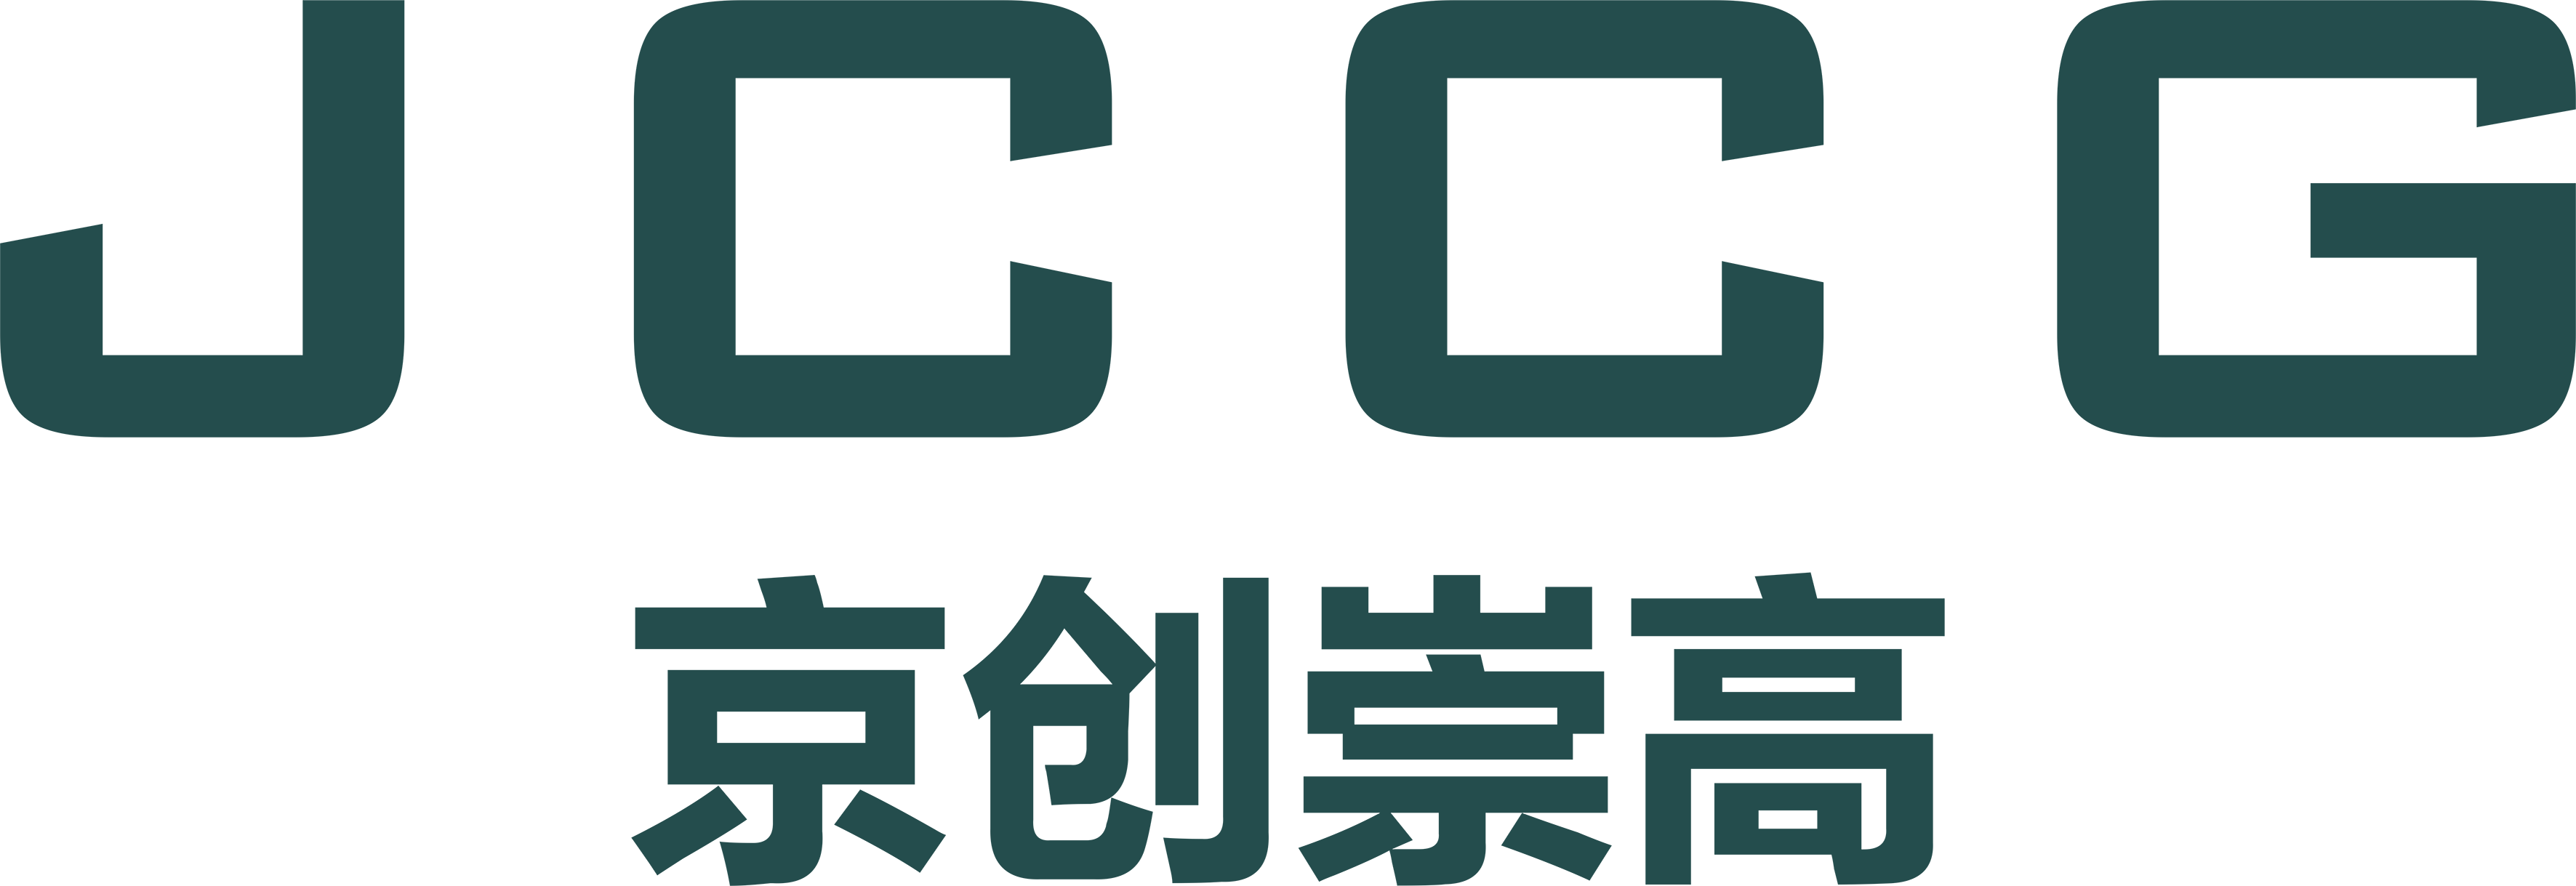 武汉澳门凤凰机网有限公司品牌Logo